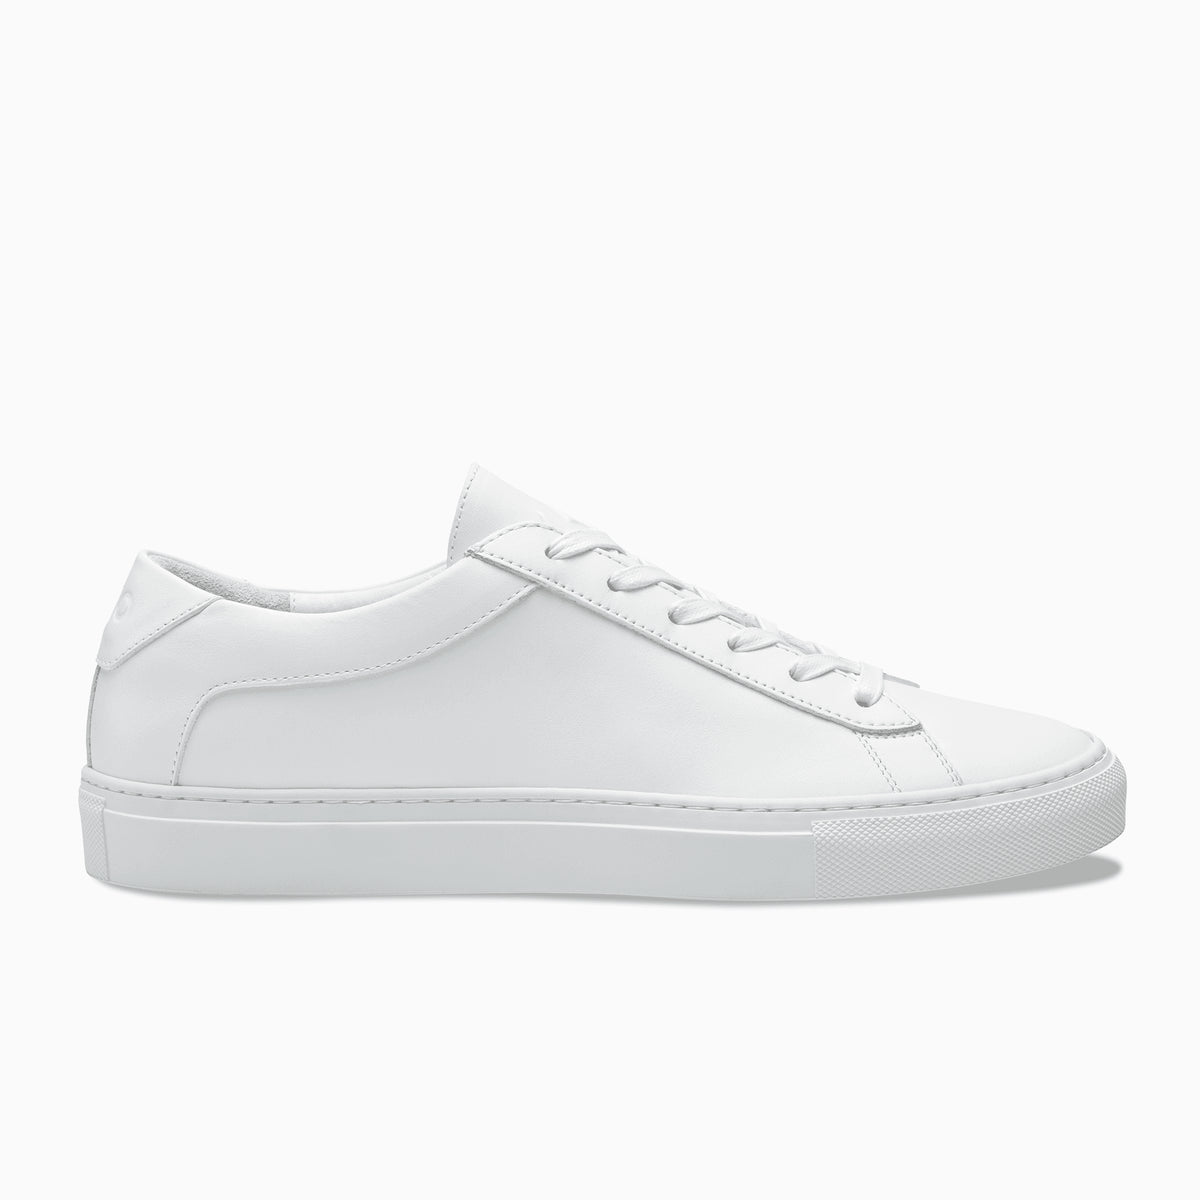 Koio Capri Women's Sneakers White | Singapore-507423